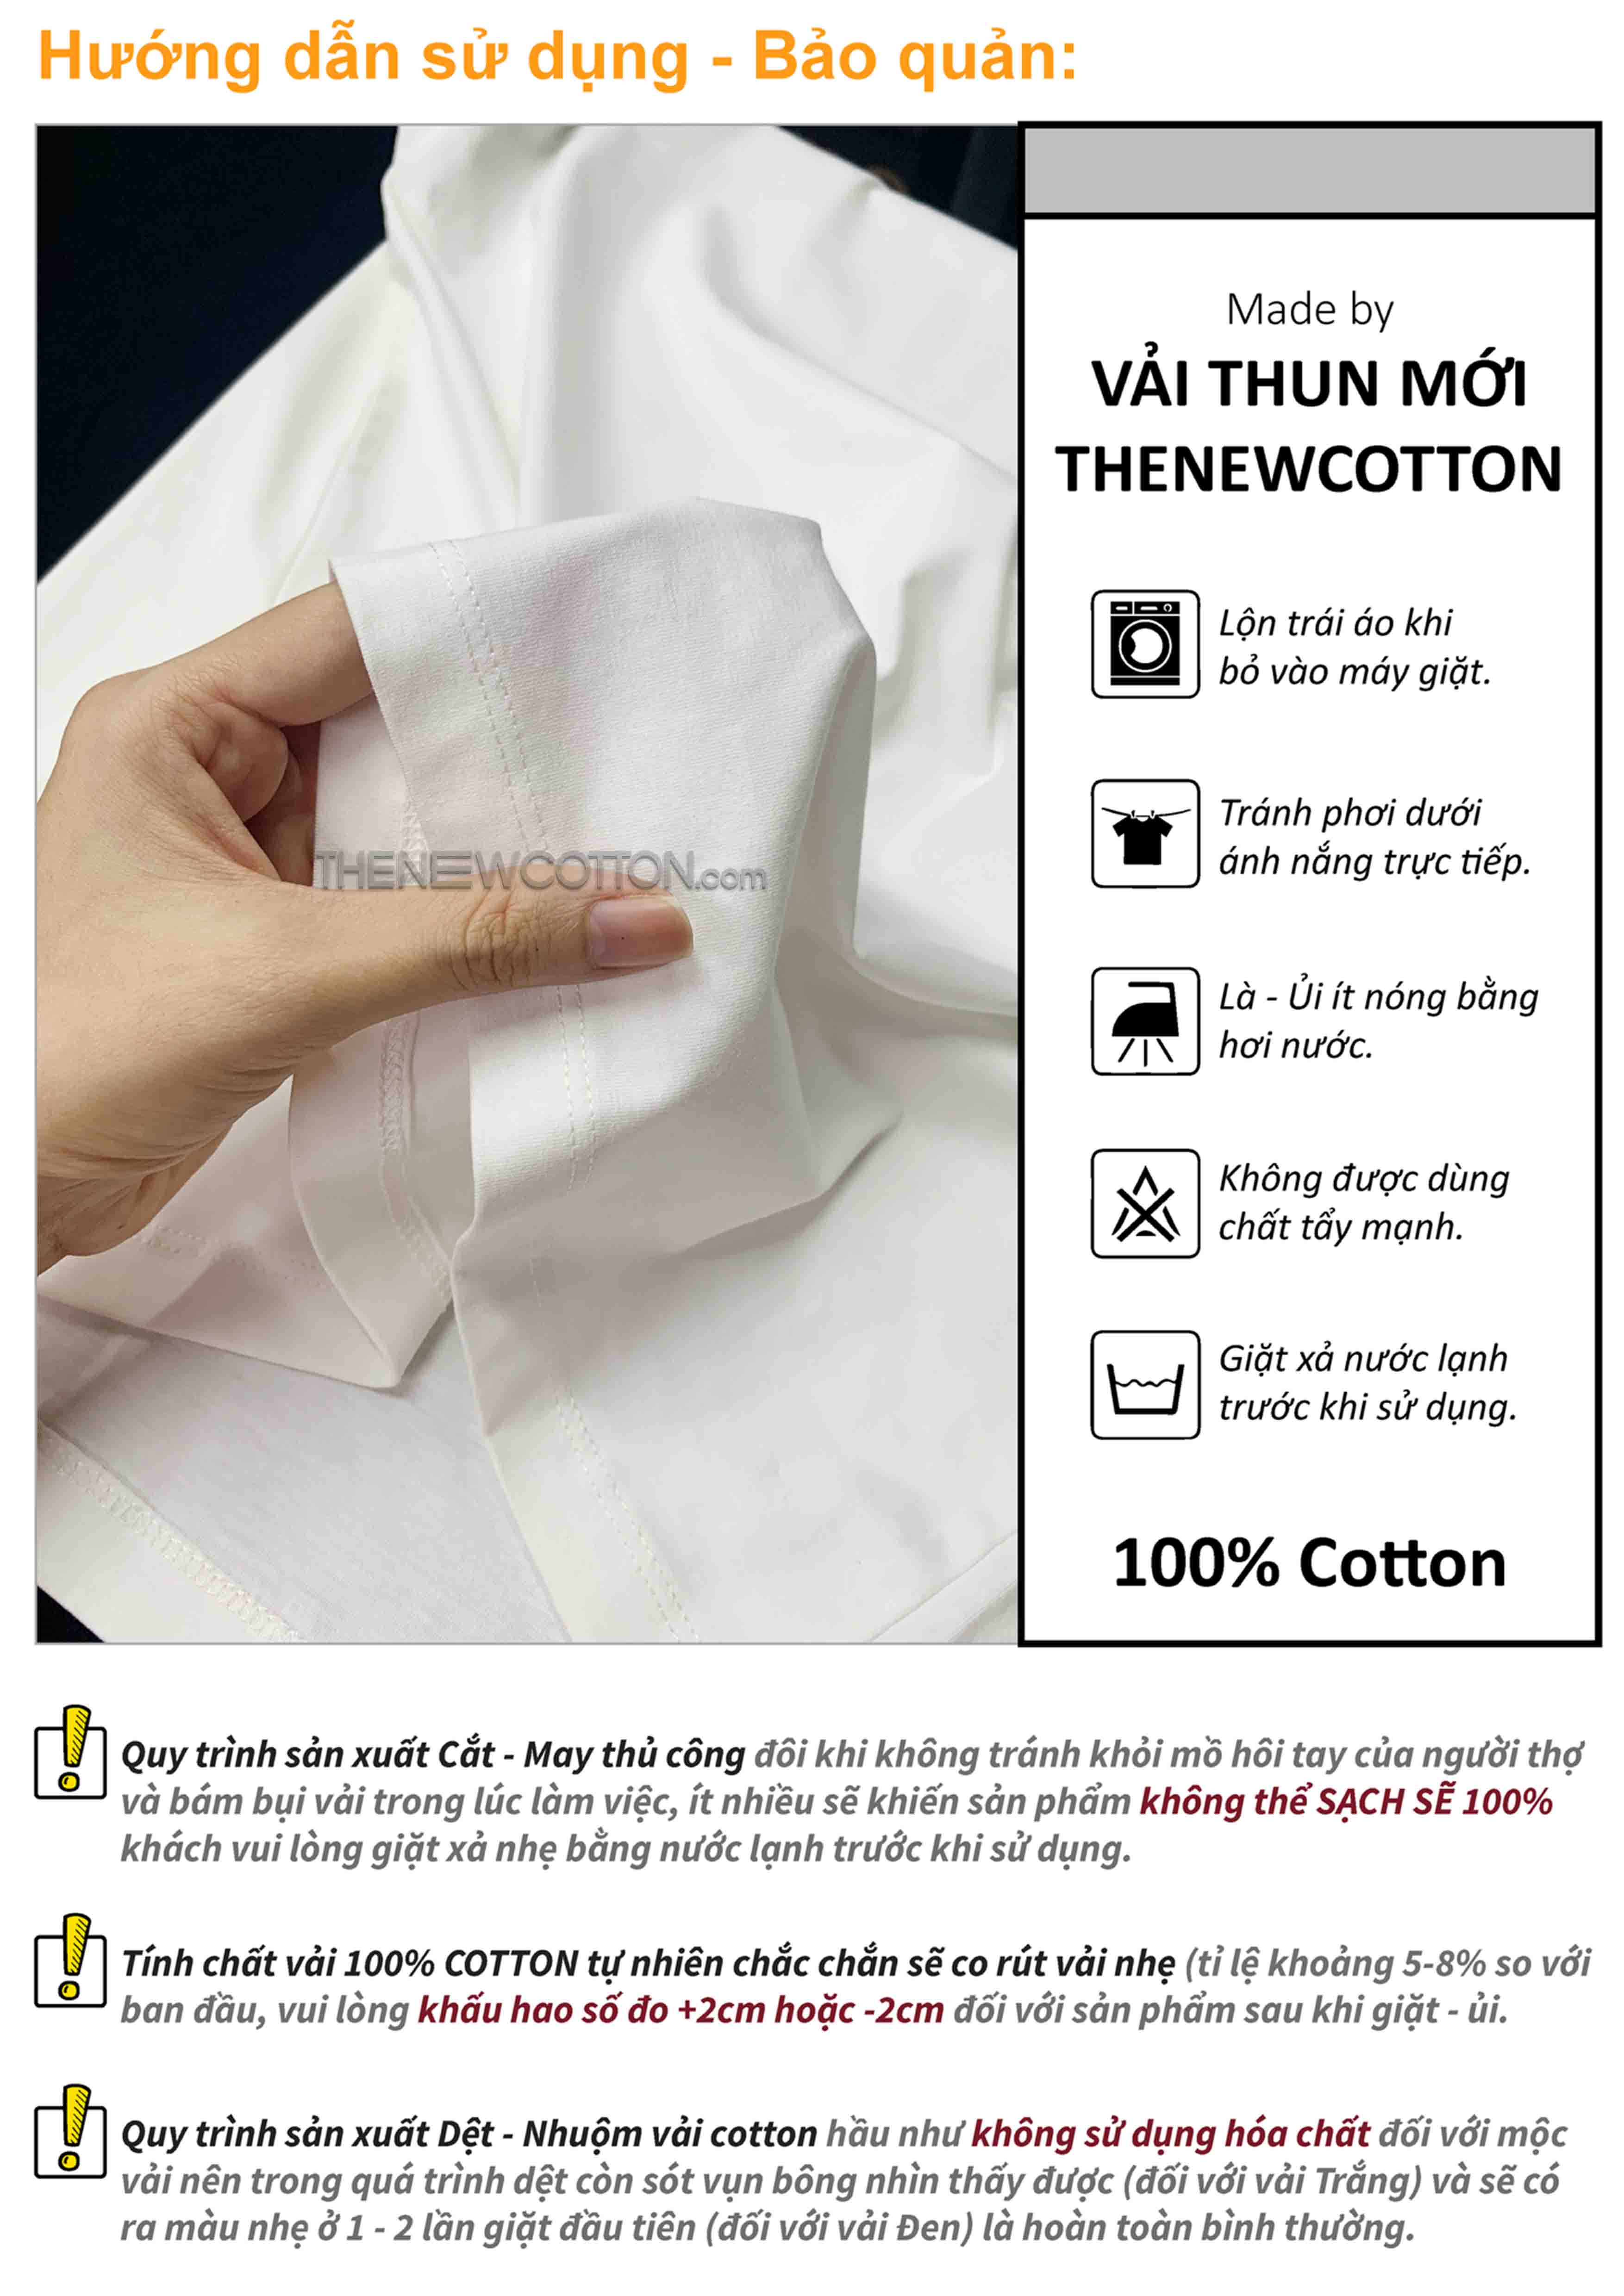 Chuyên Sỉ Phôi Áo Trơn Unisex Streetwear x Vải Thun Cotton Spandex (Mỹ) | Xưởng Gia Công Local Brand Theo Yêu Cầu - TheNewCotton.com